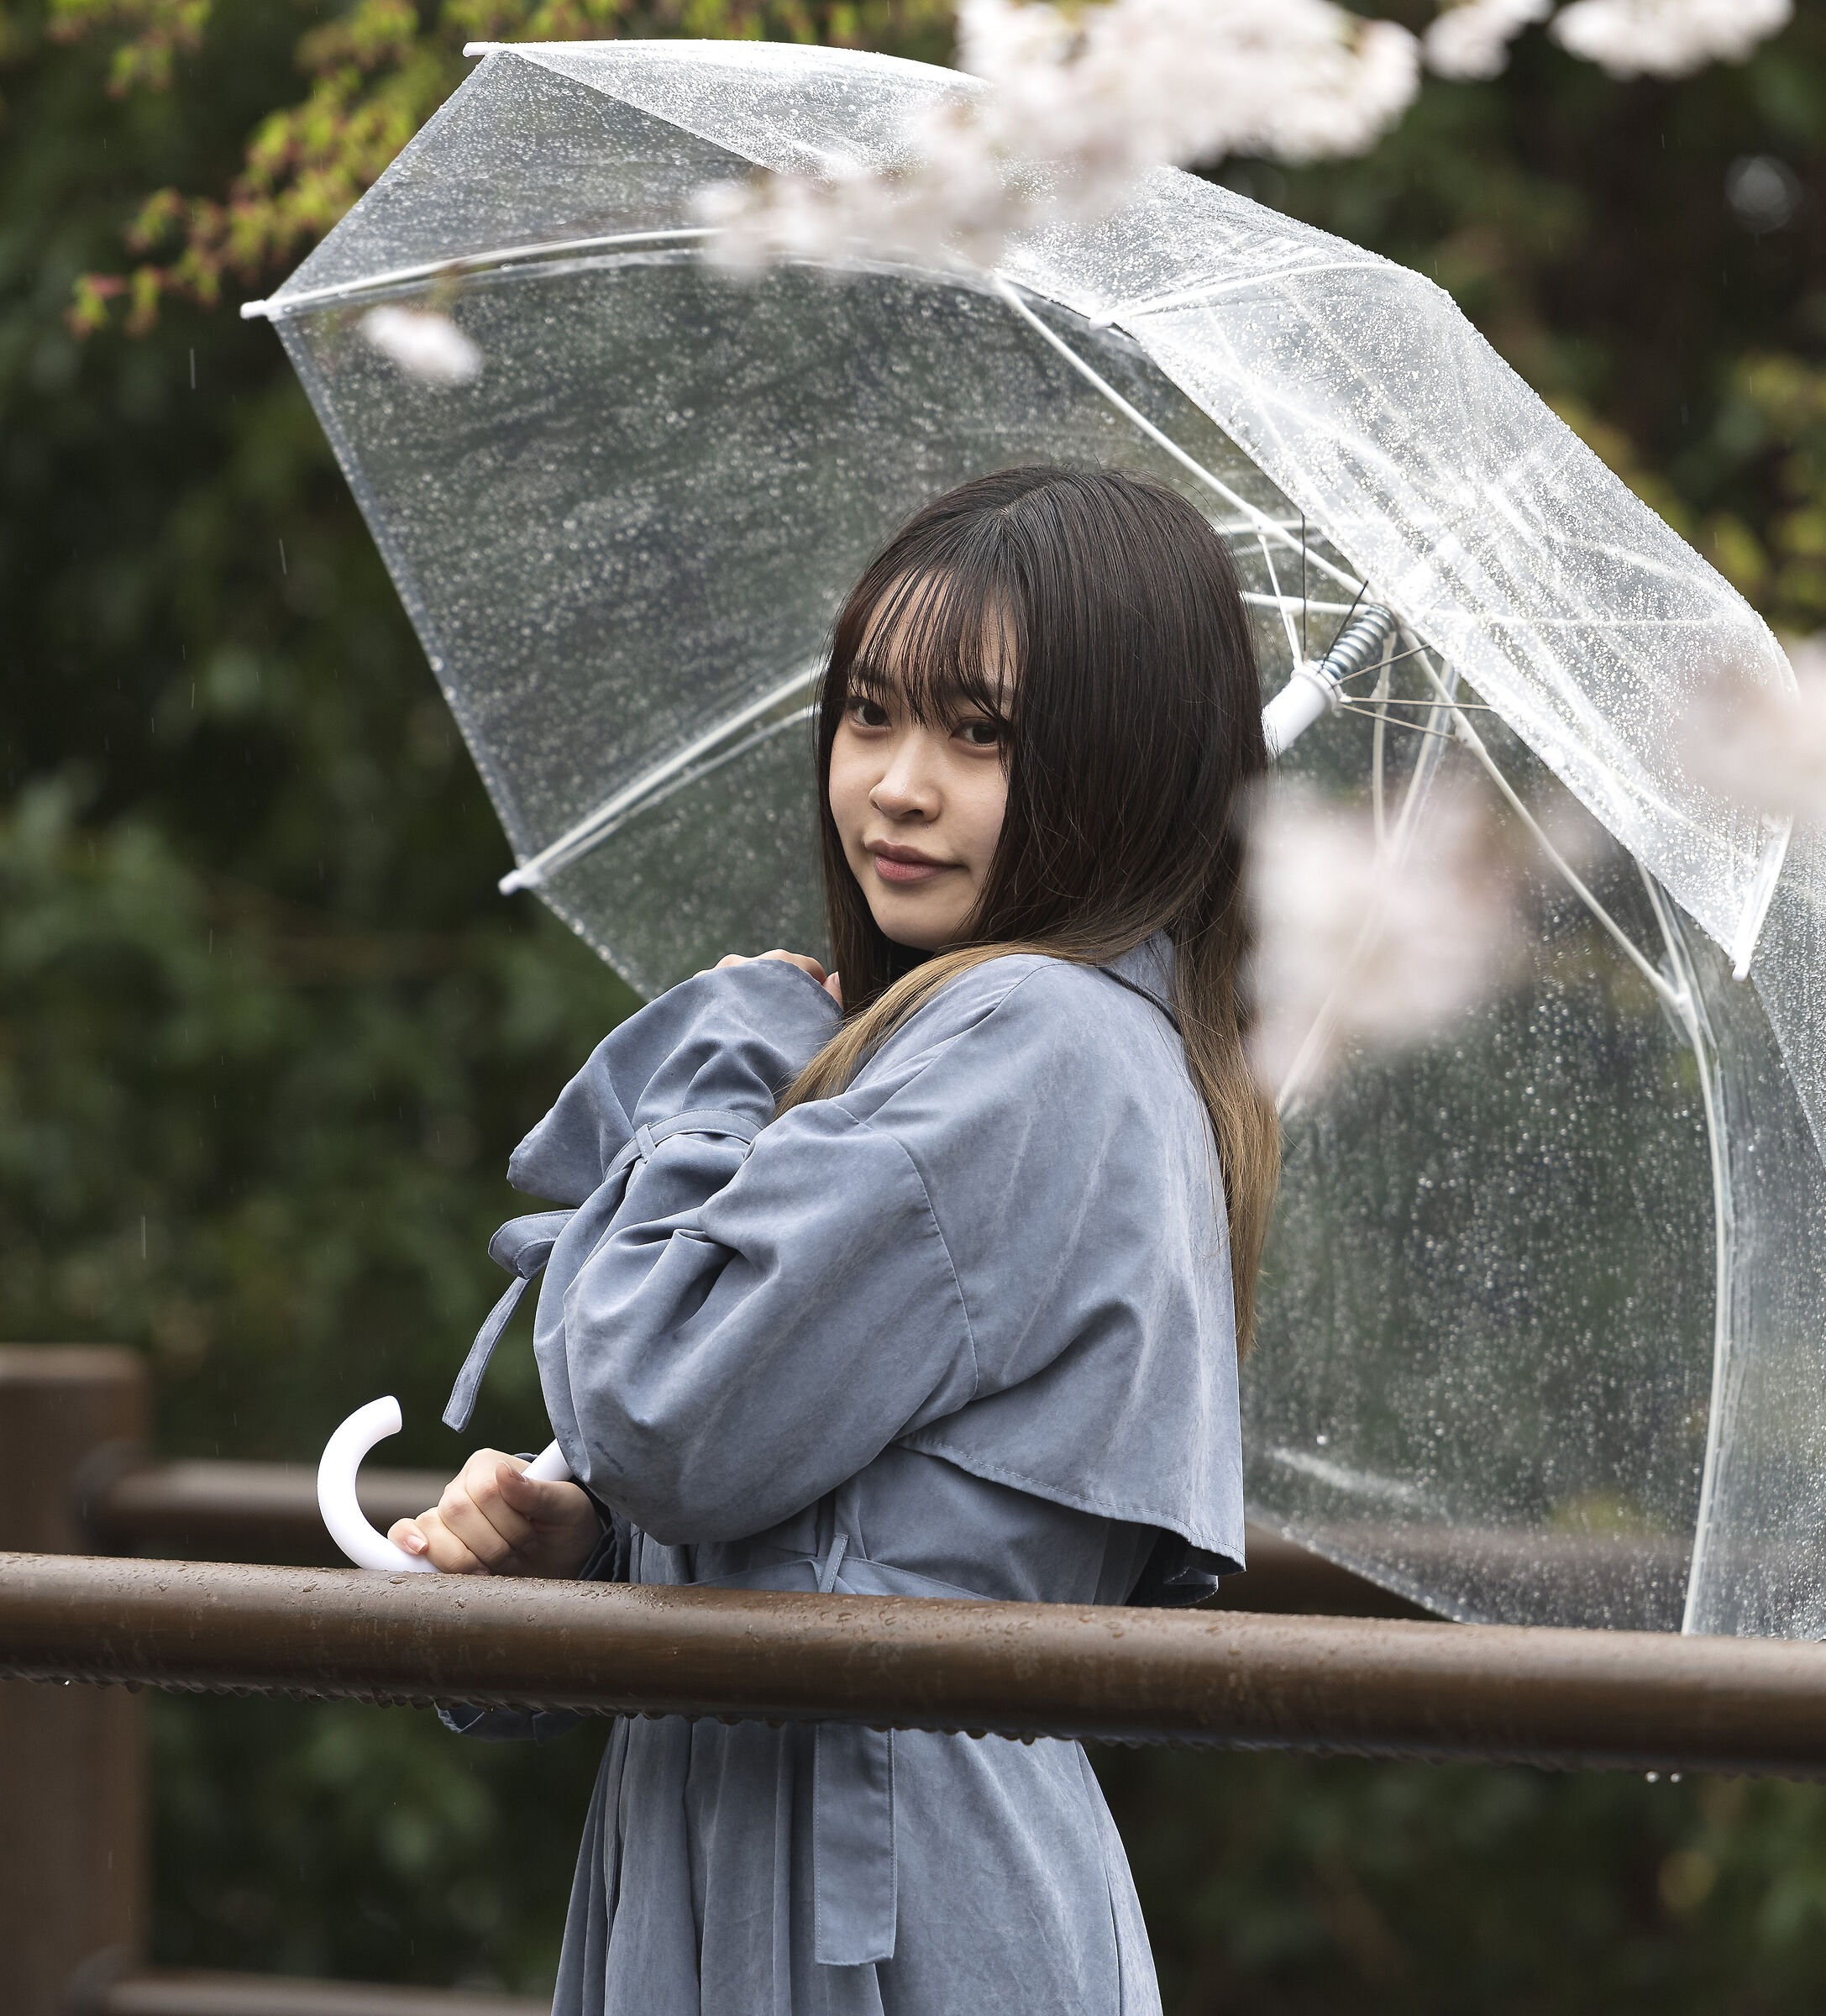 A rain girl...